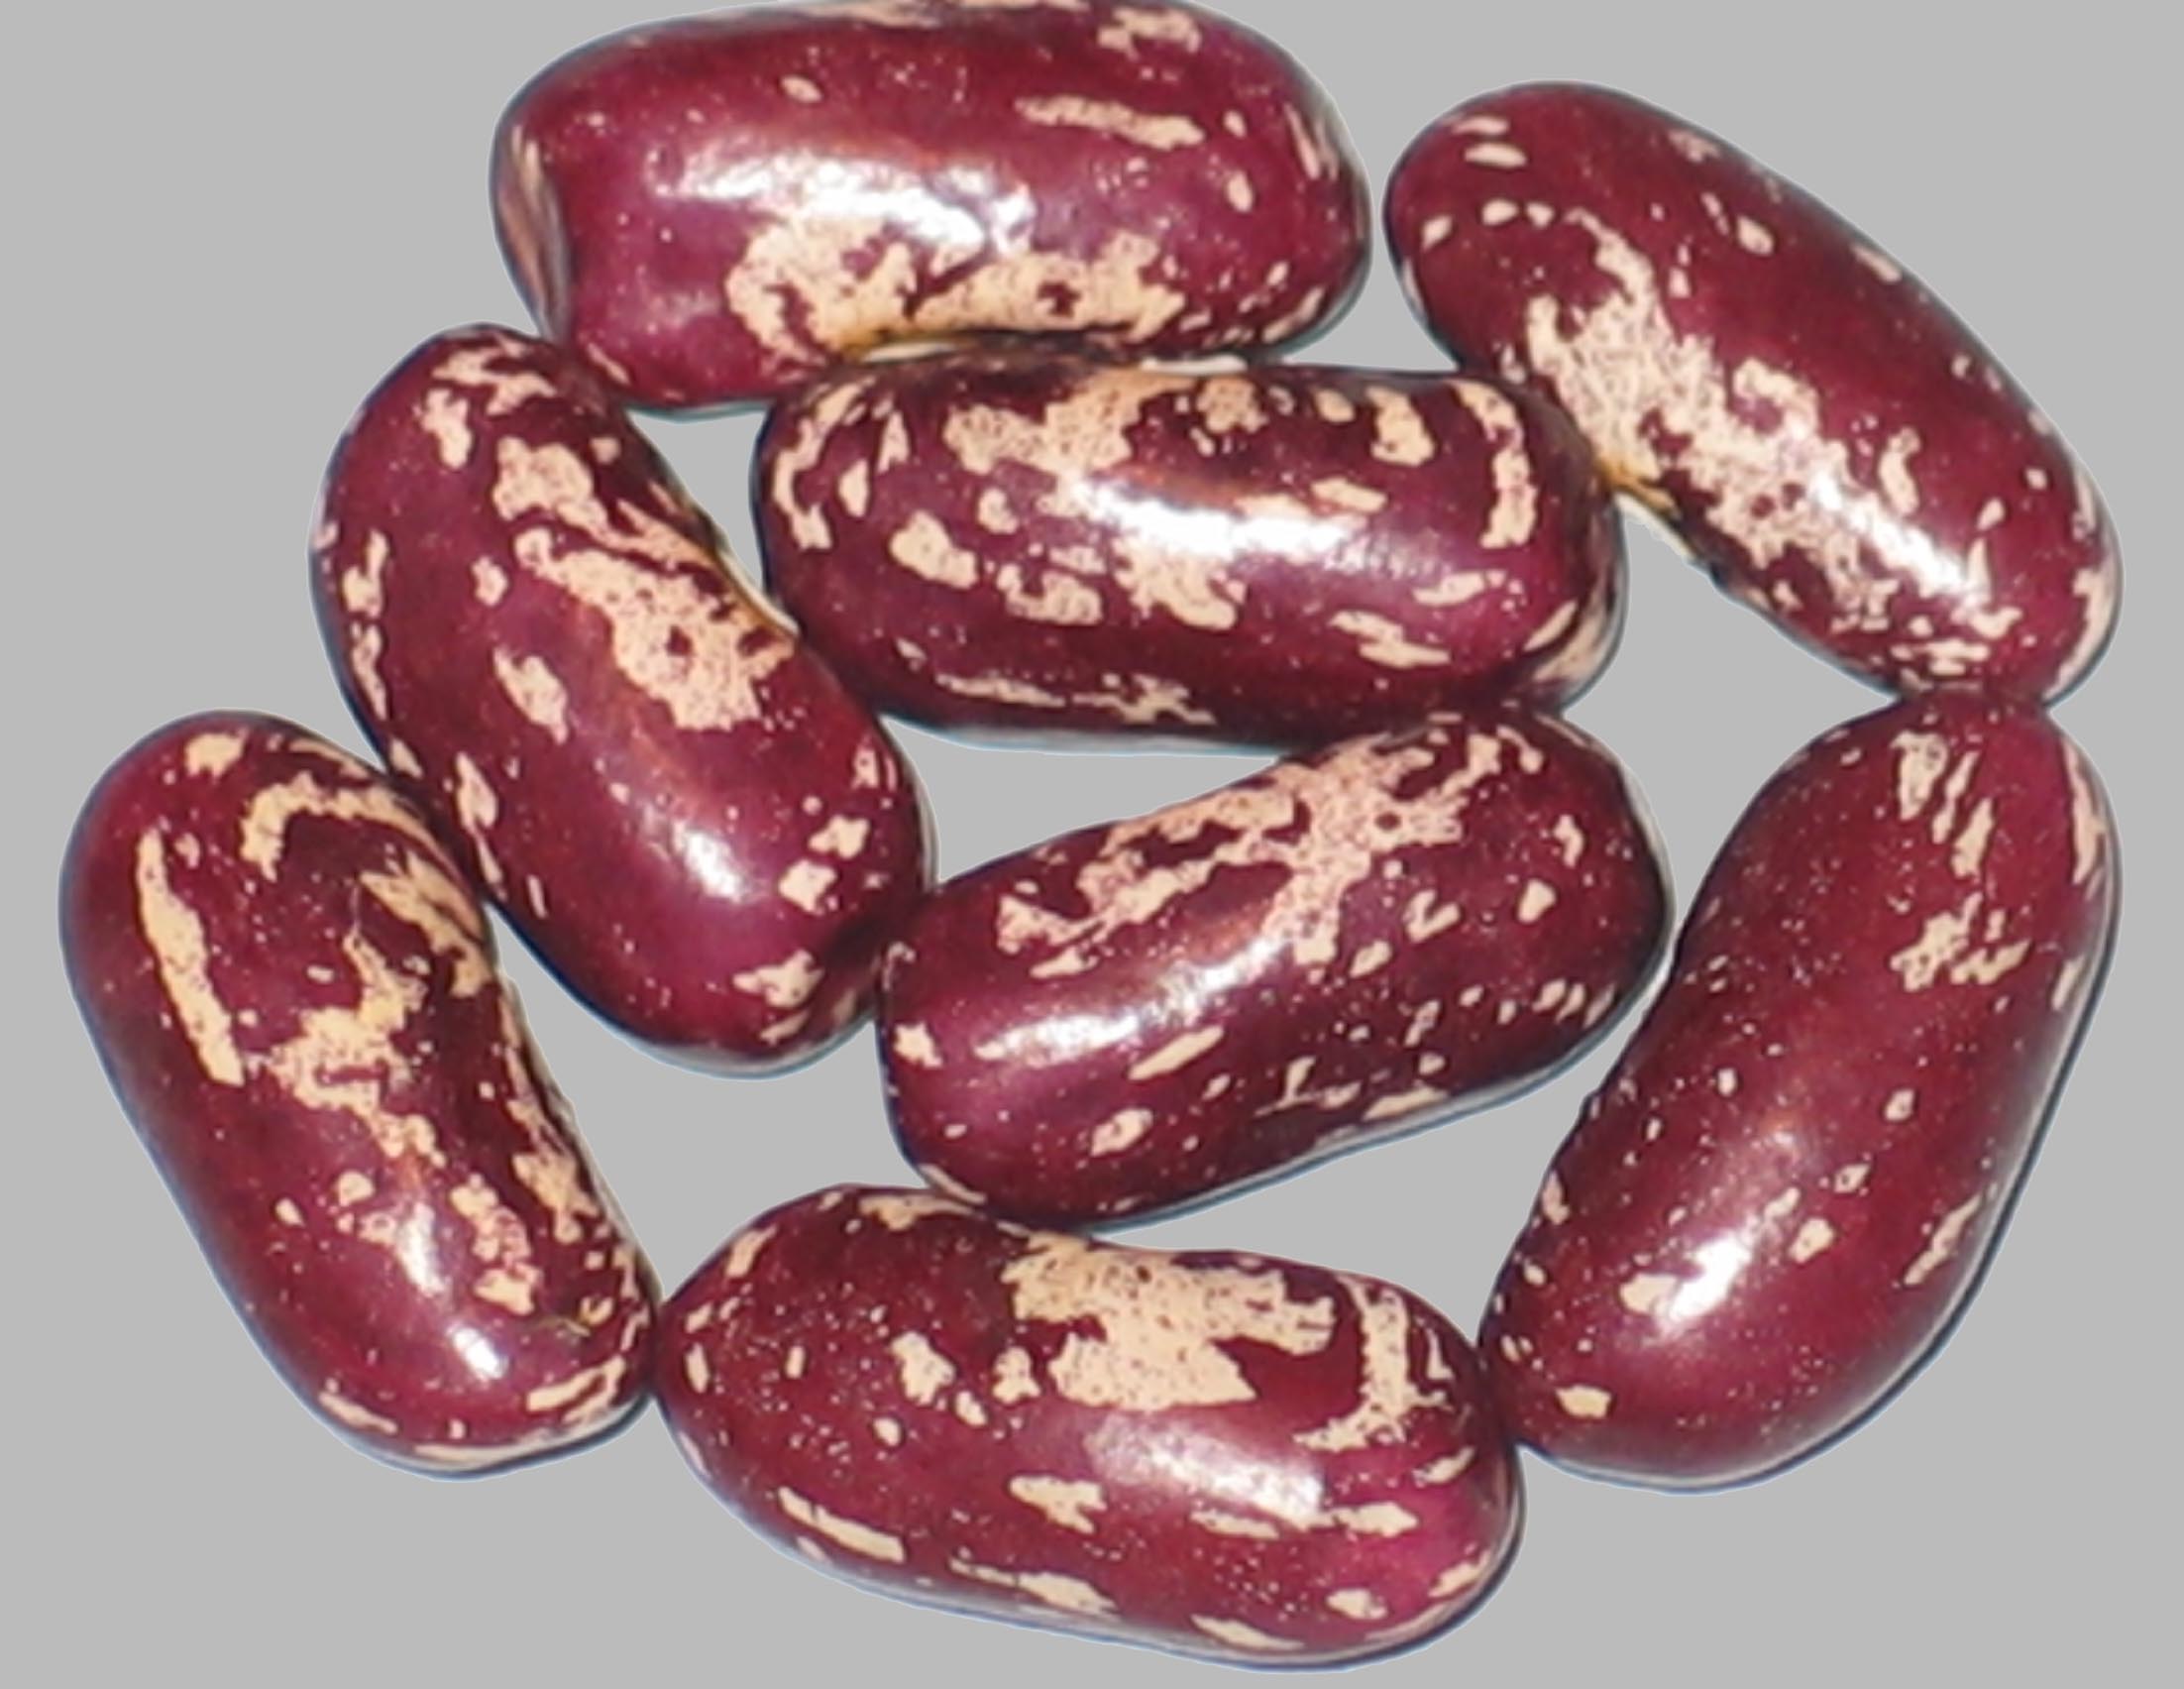 image of Mangetout Pleine Le Panier beans